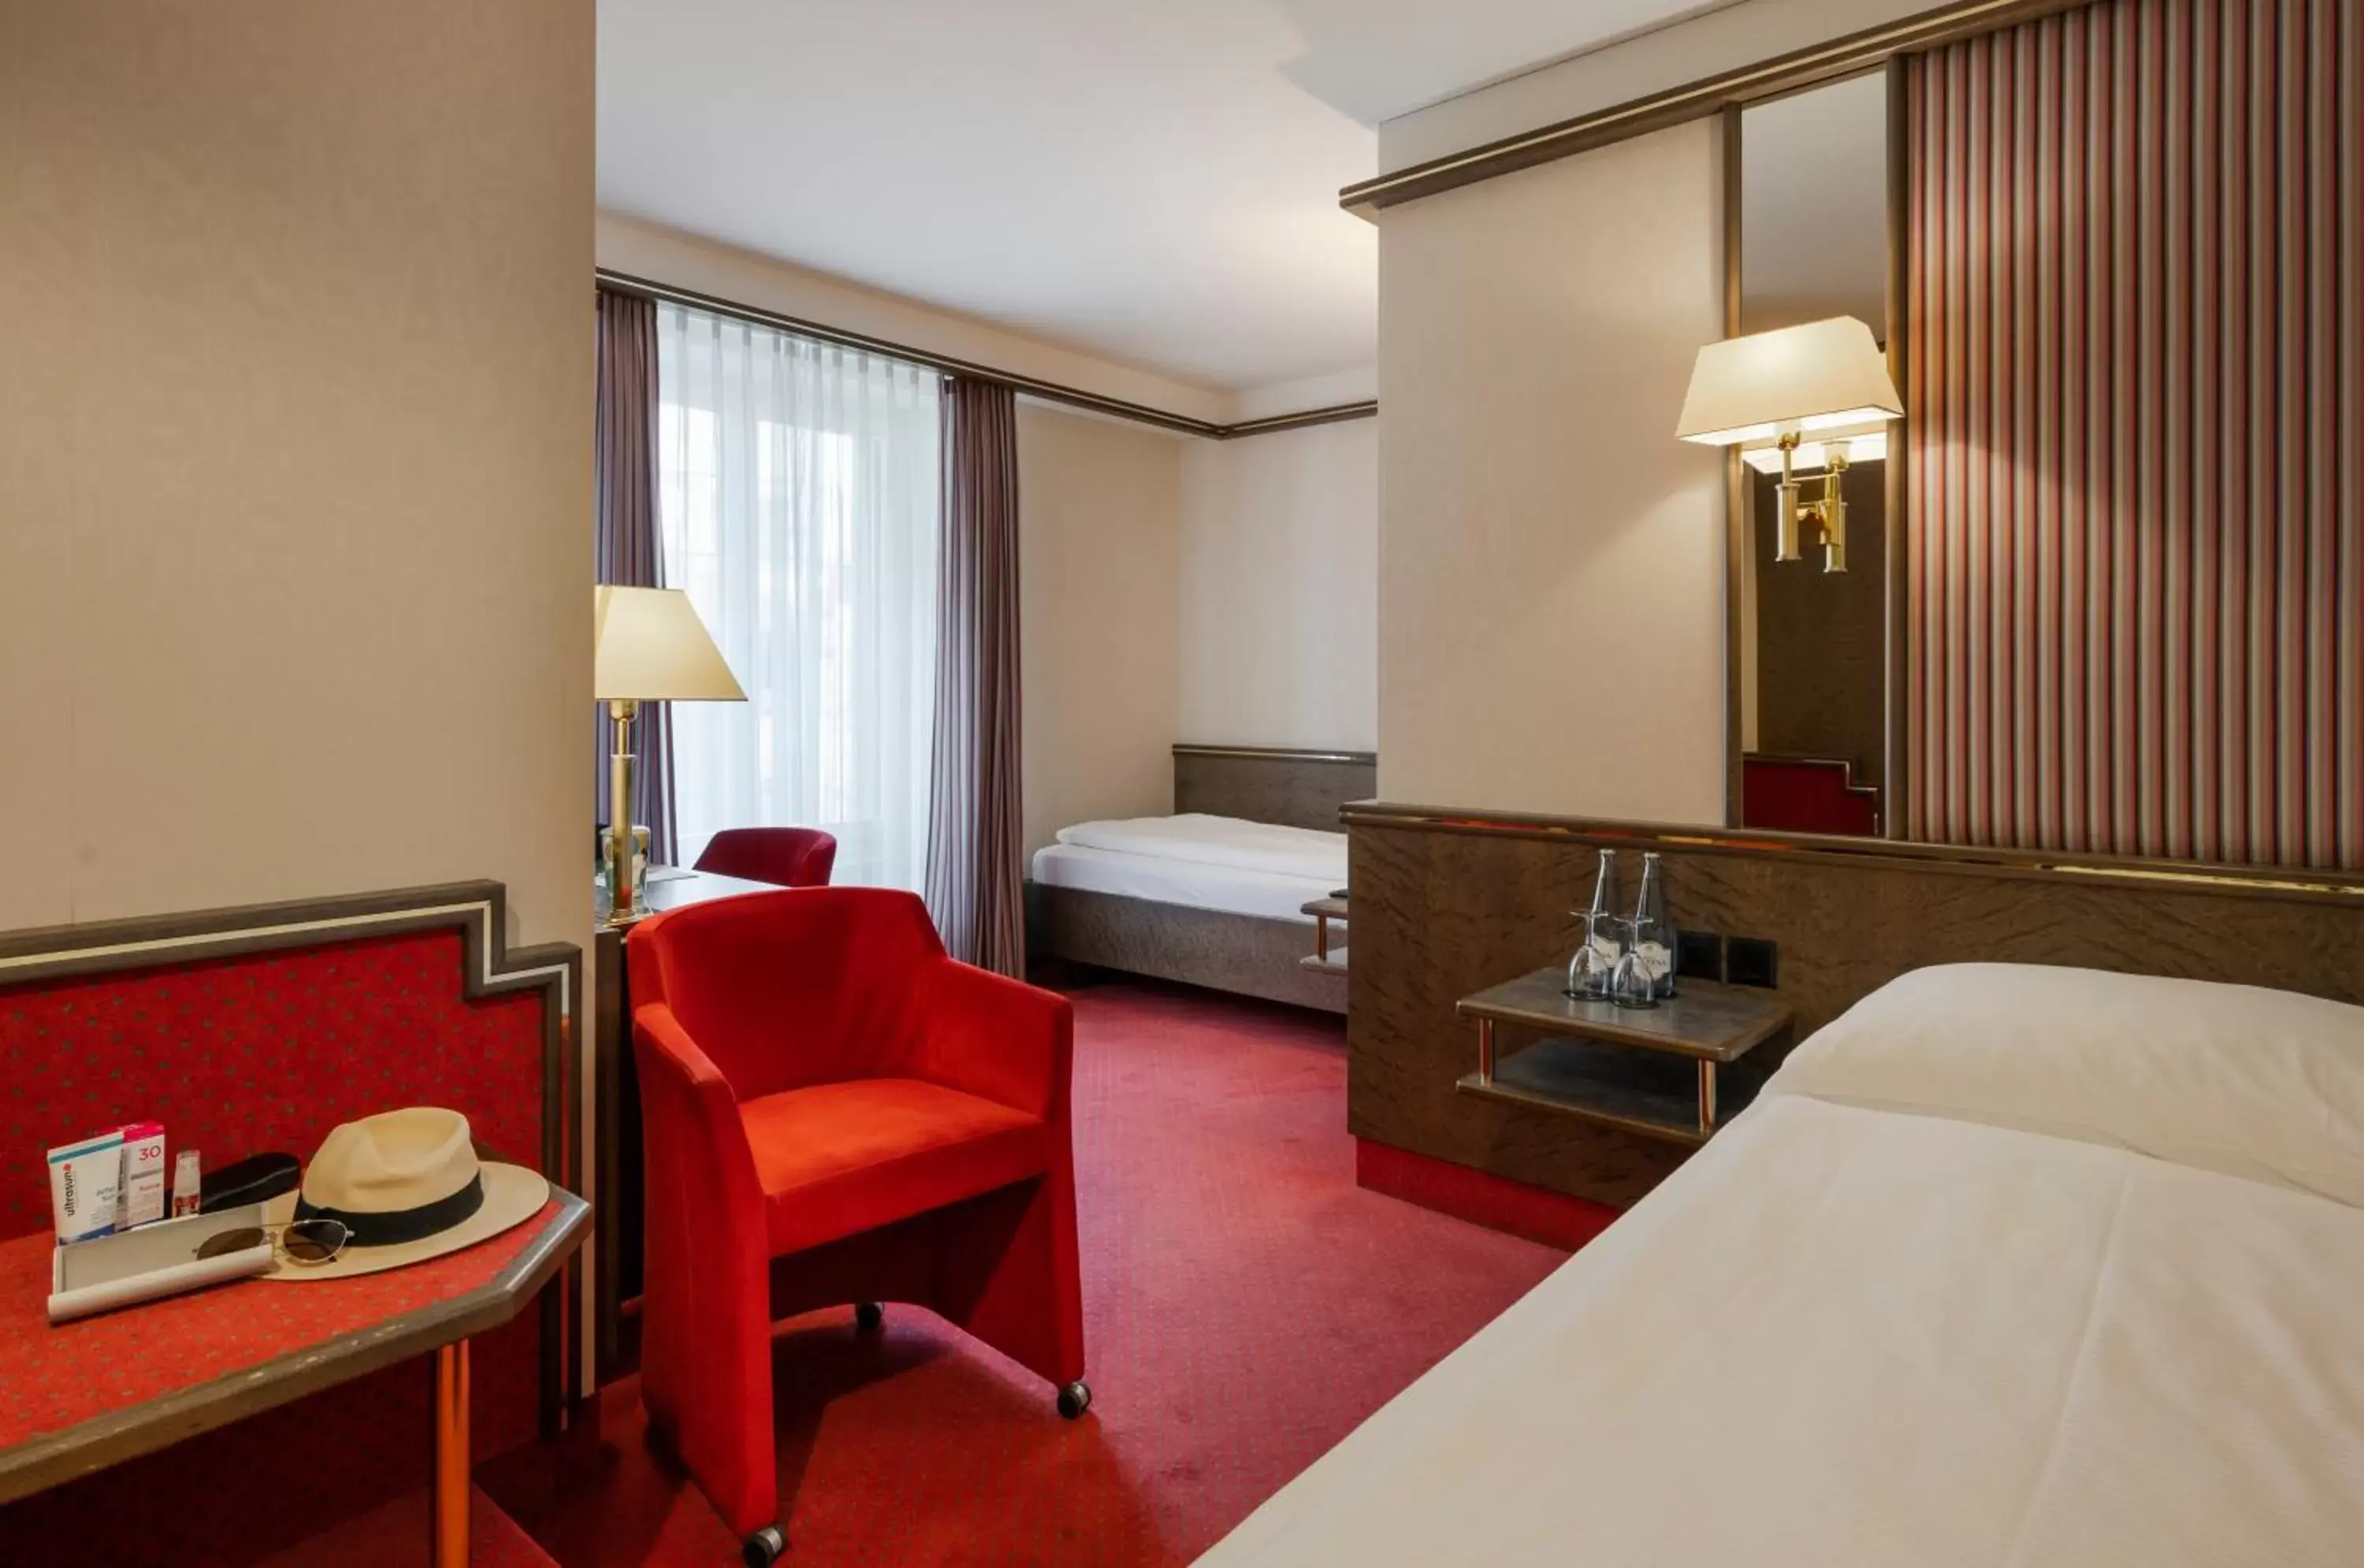 Bedroom in Hotel Monopol Luzern